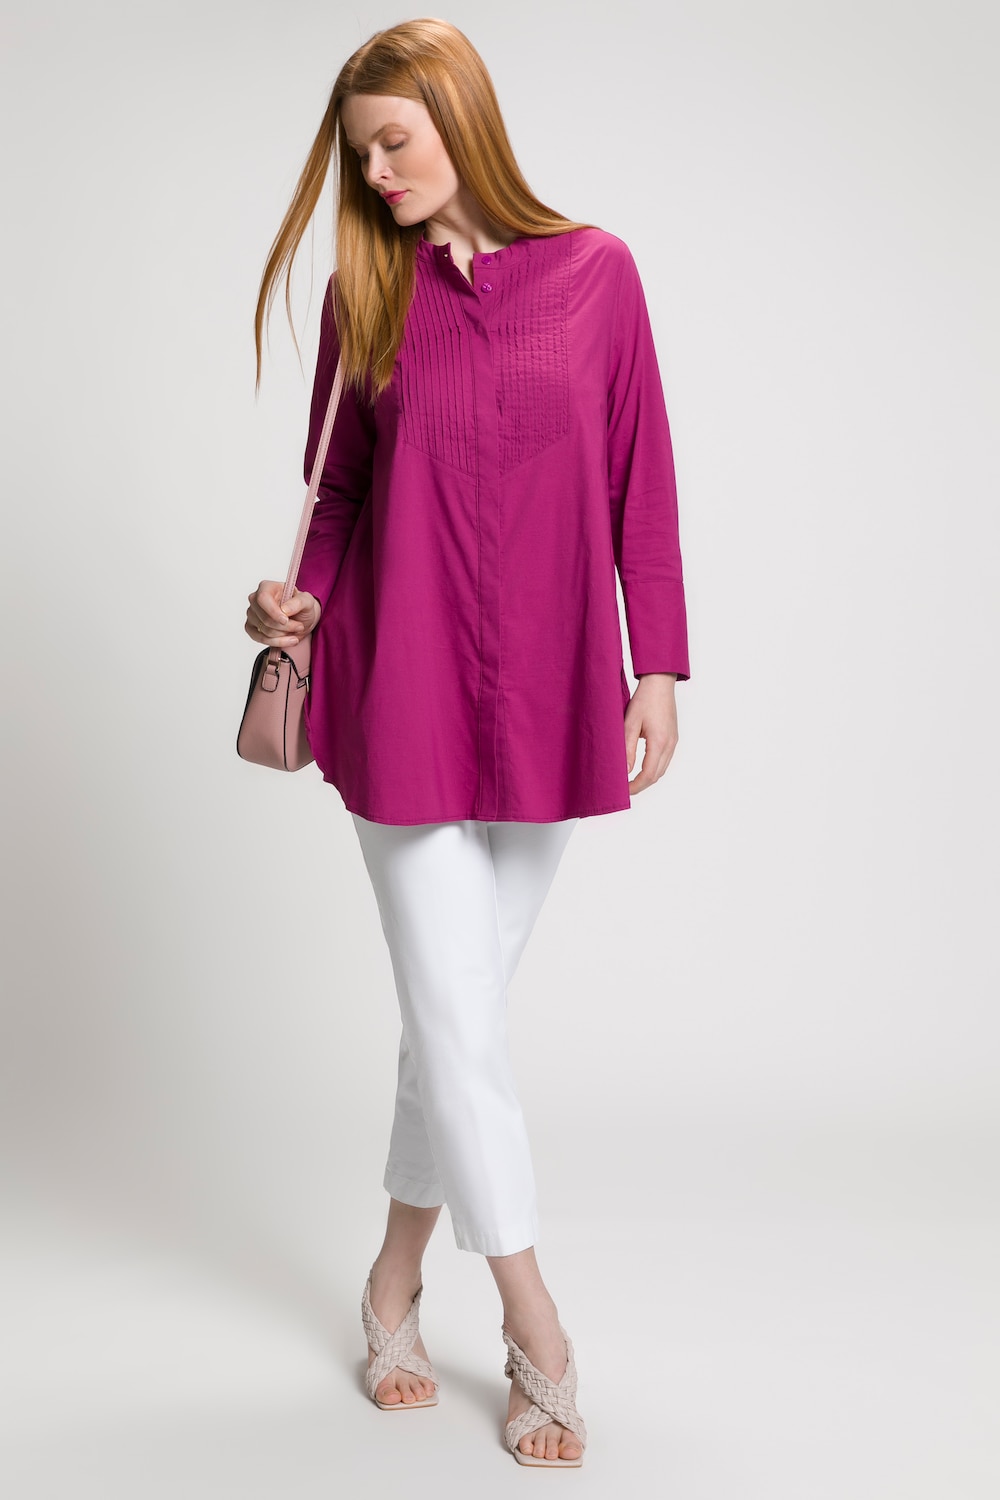 Grote Maten longline blouse, Dames, roze, Maat: 46/48, Katoen/Synthetische vezels, Ulla Popken